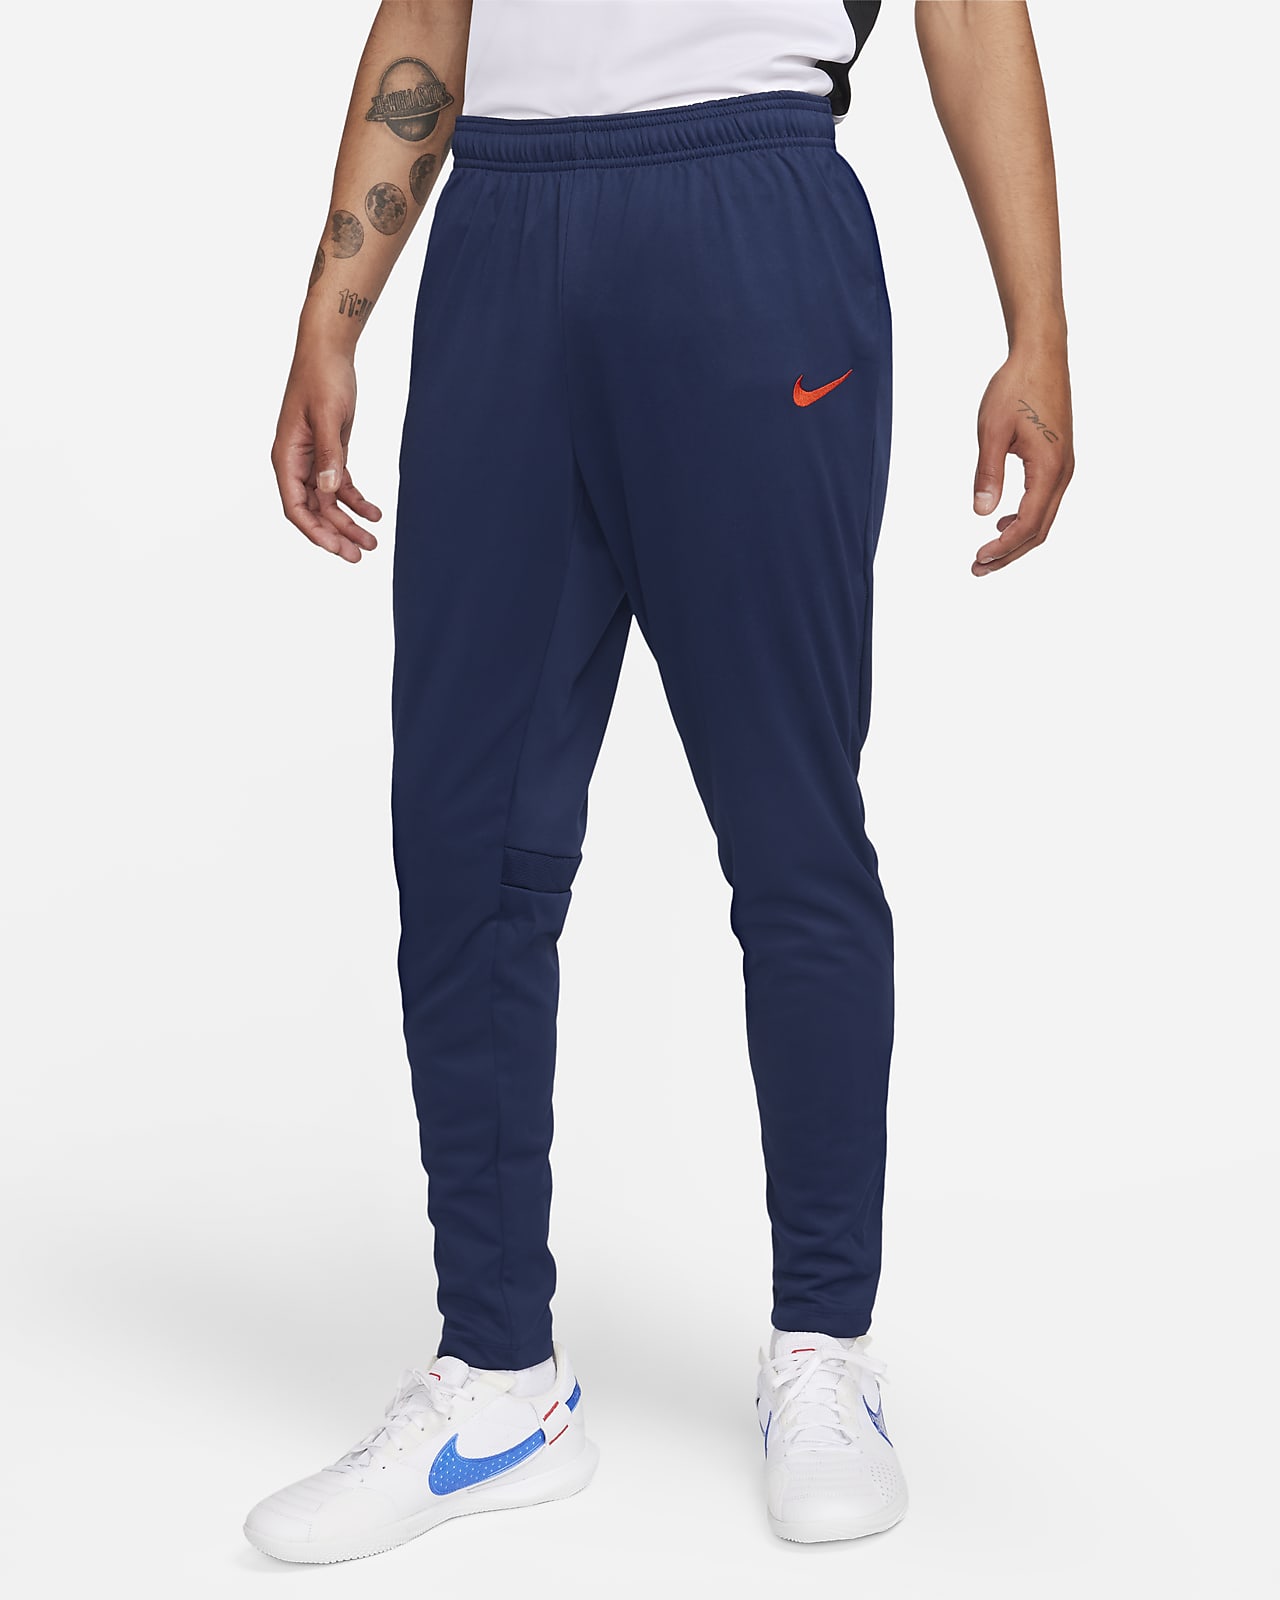 Nike Pro Men's Training Drill Pants.